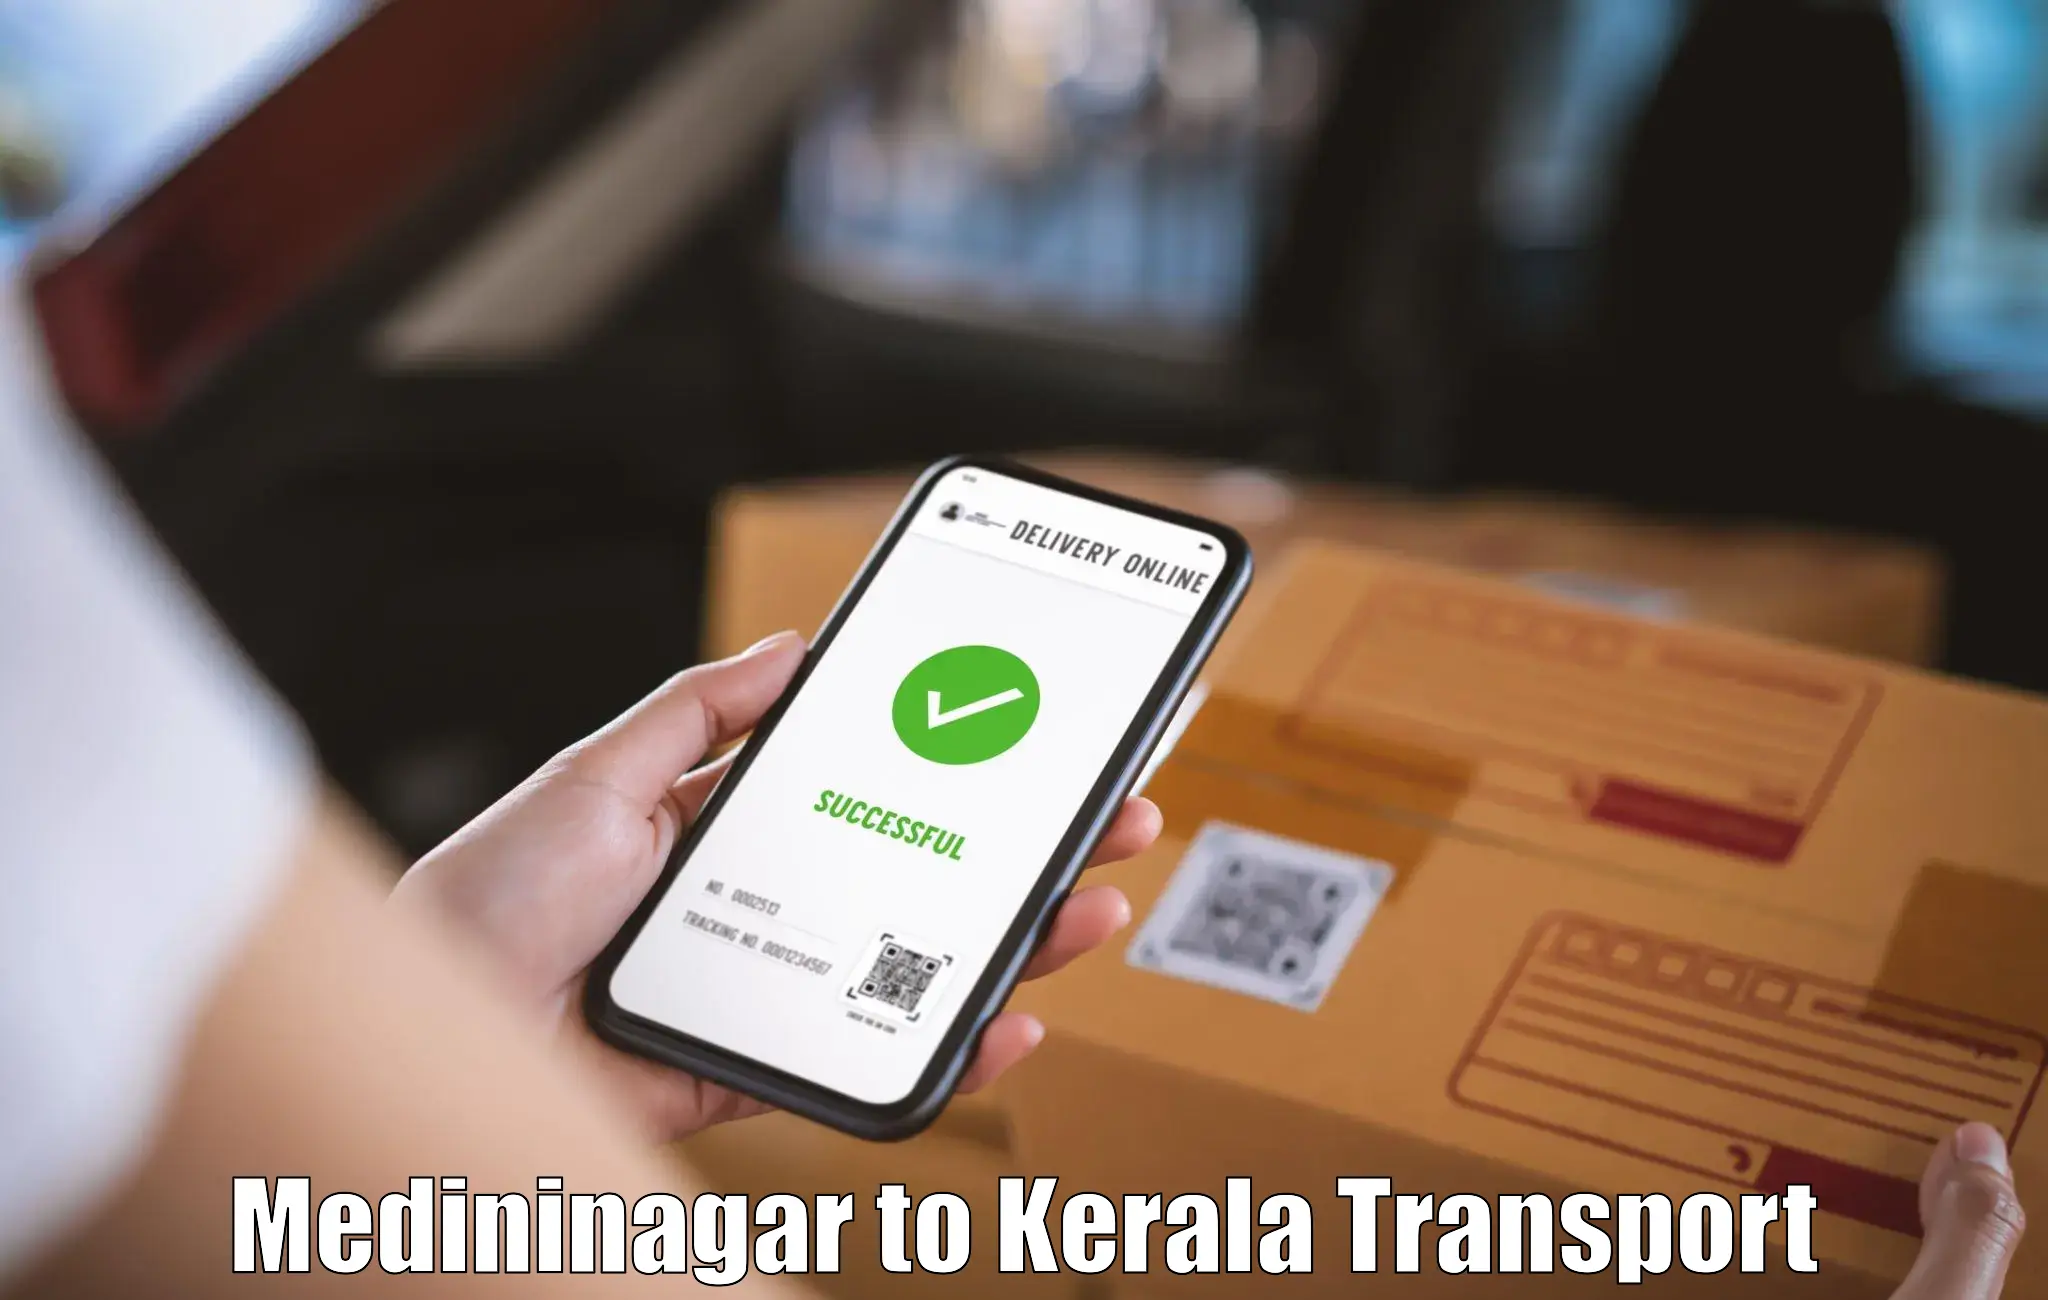 Material transport services Medininagar to Ponekkara